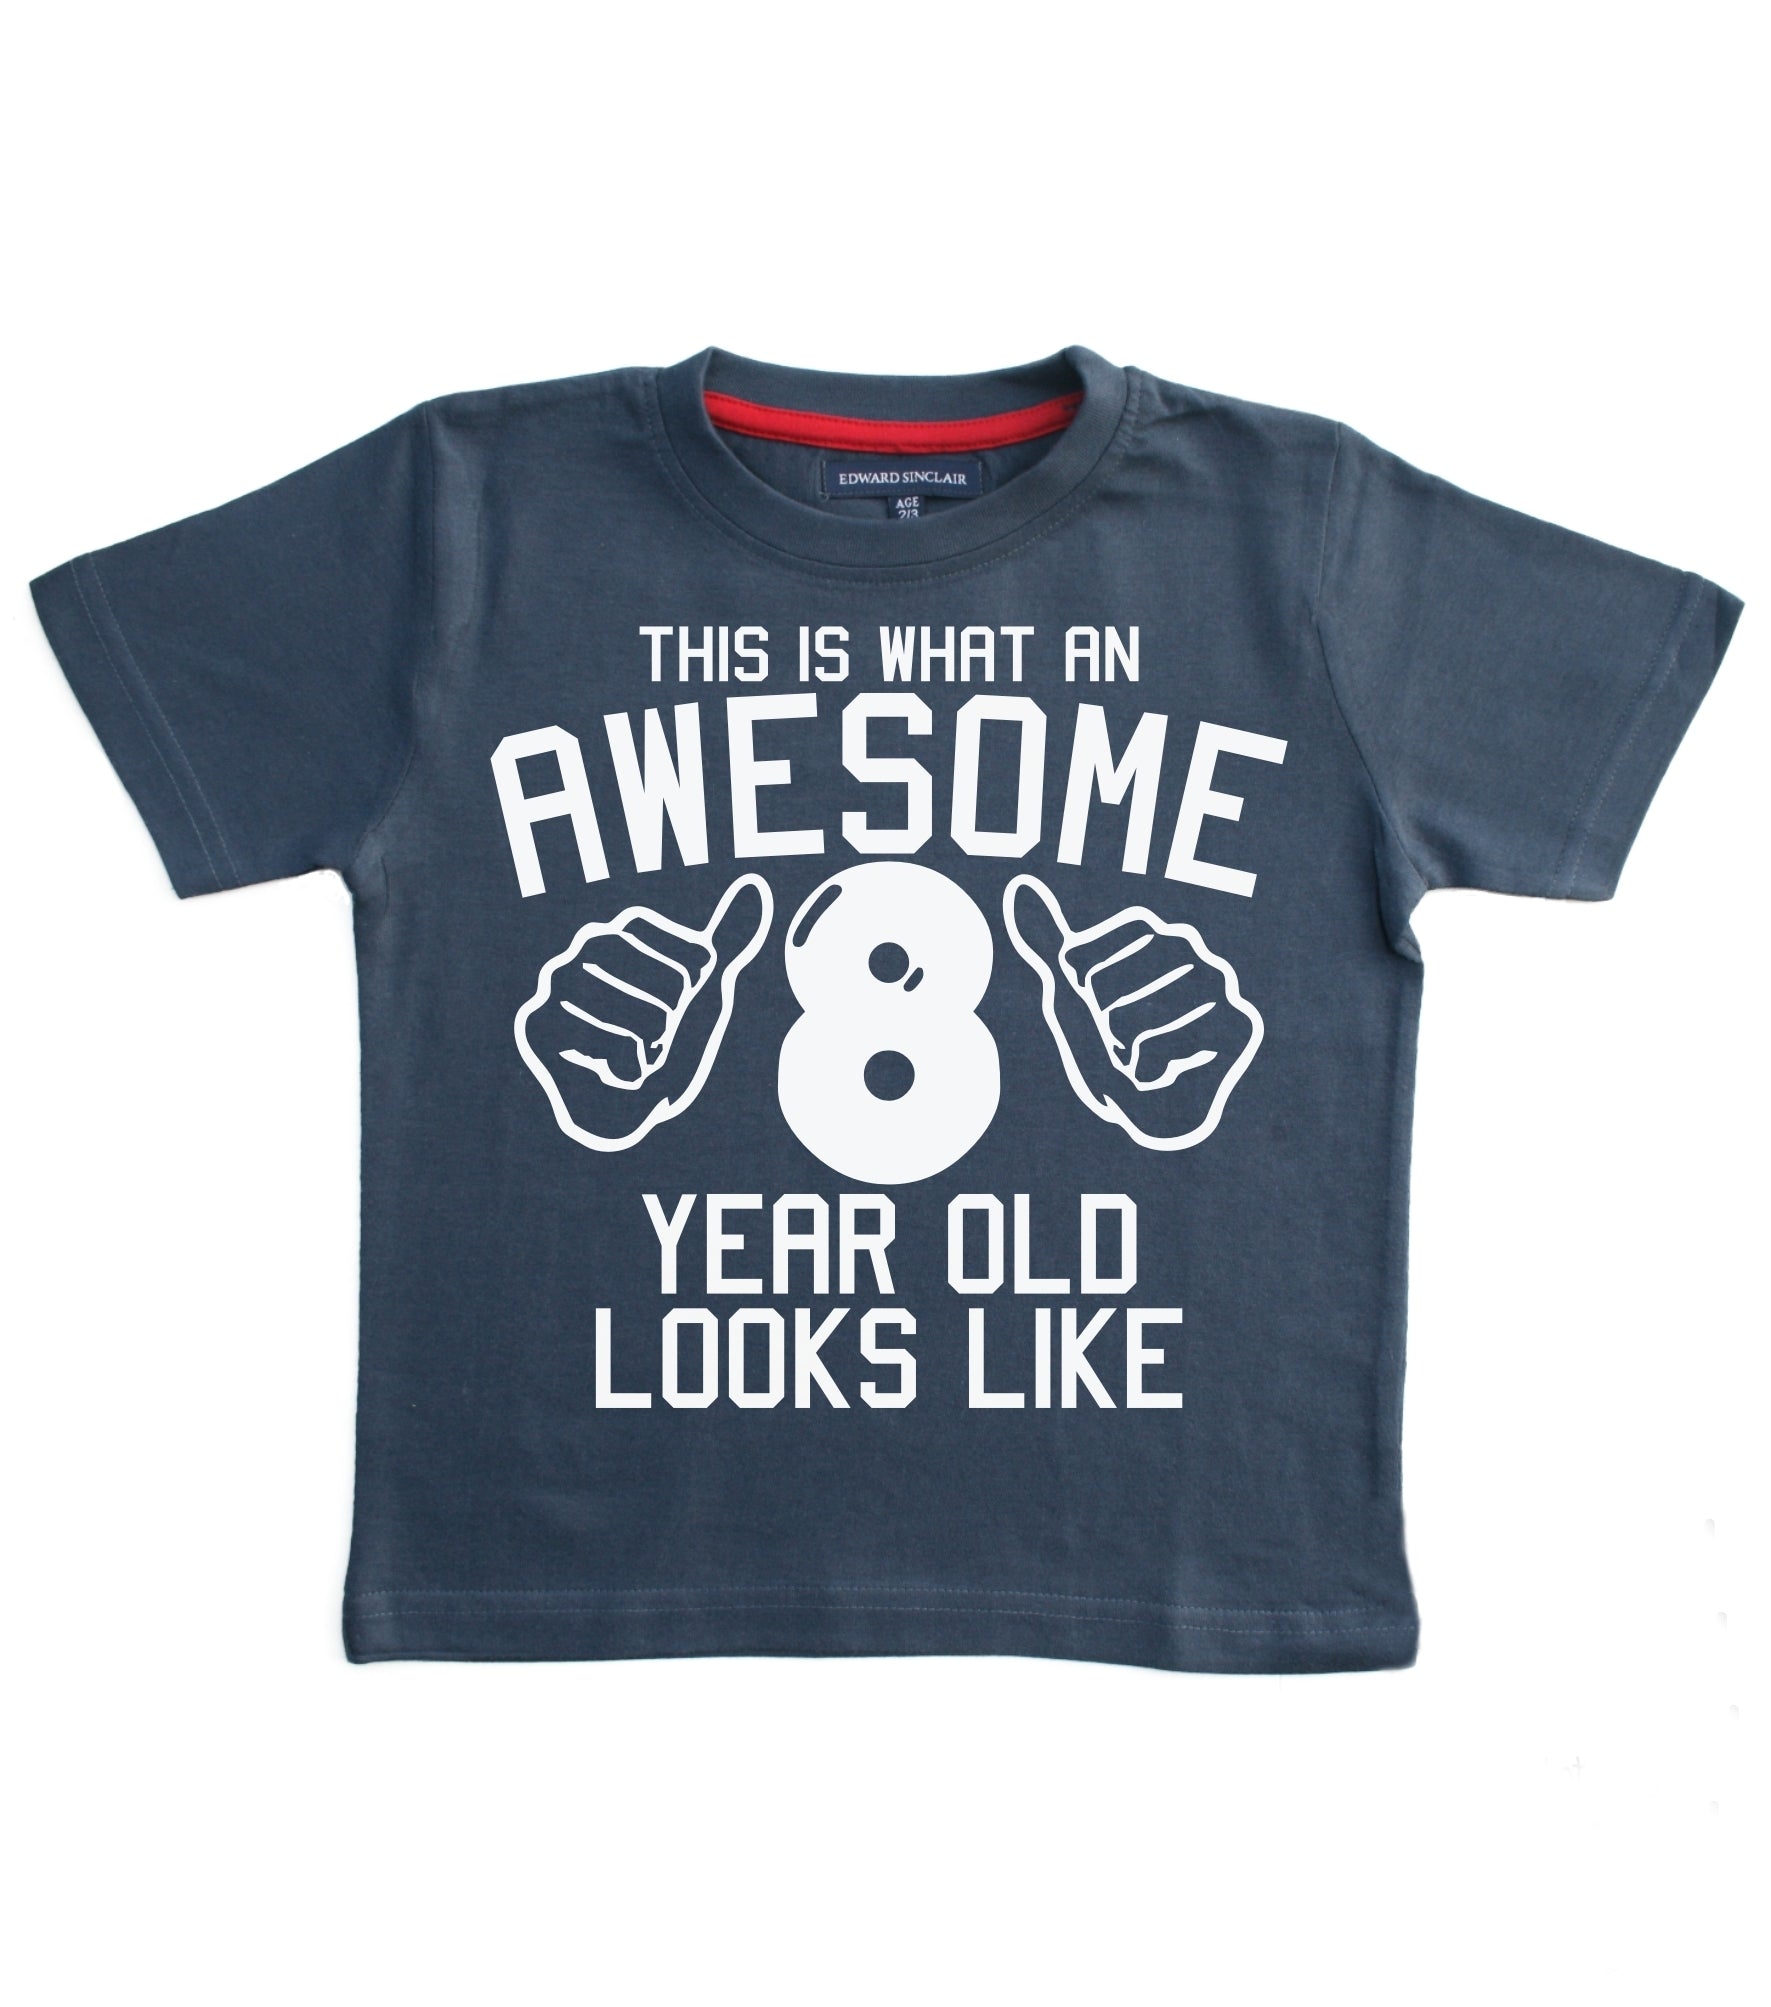 C'est à quoi ressemble un génial 8 ans T-shirt pour enfants 